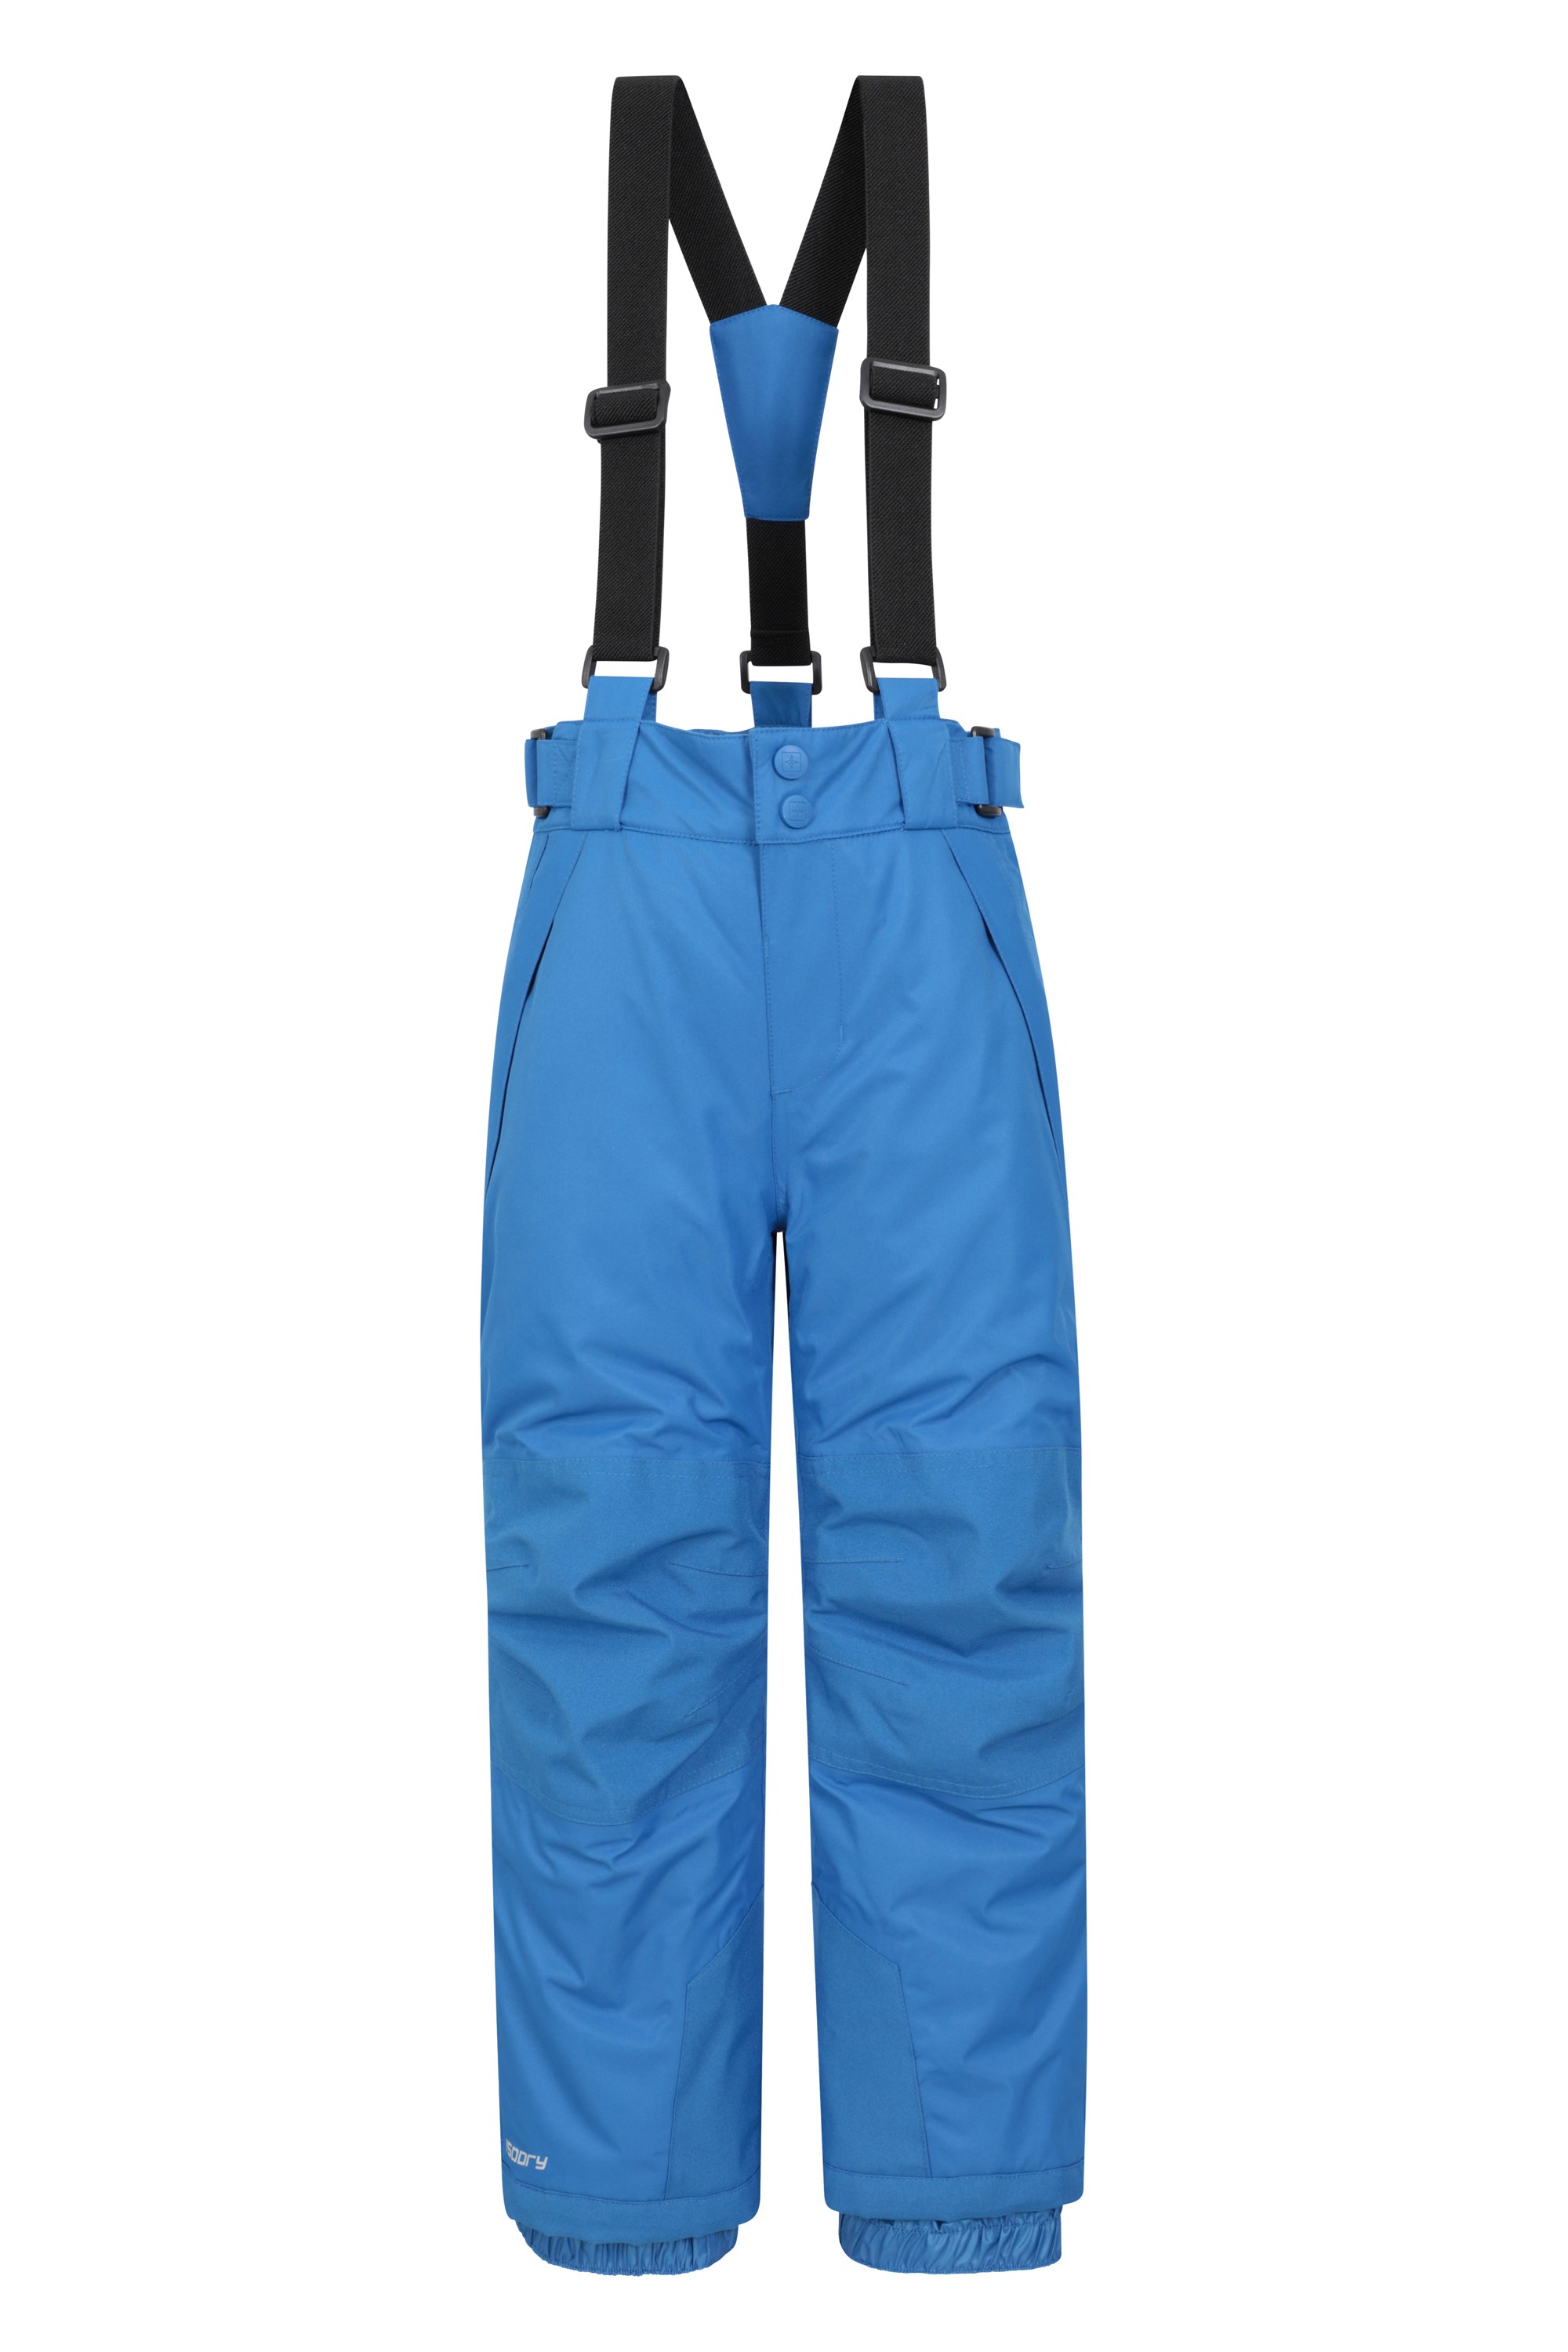 Falcon Extreme Kids Ski Pants - Turquoise | Mountain Warehouse | US